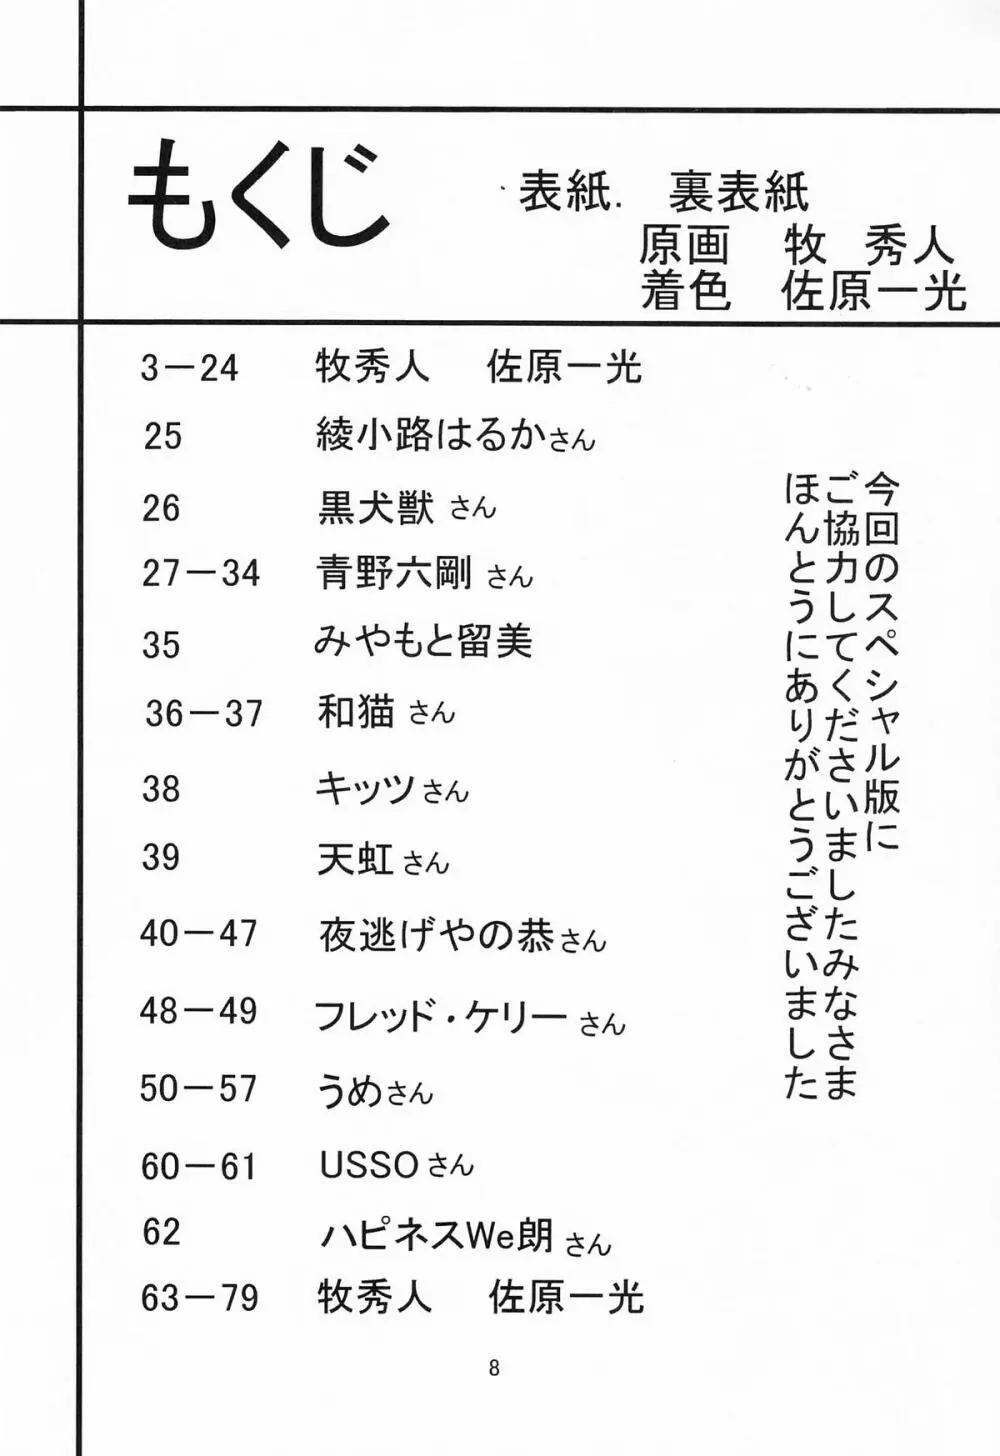 サターン降臨10周年記念本 サイレント・サターン スペシャル 8ページ